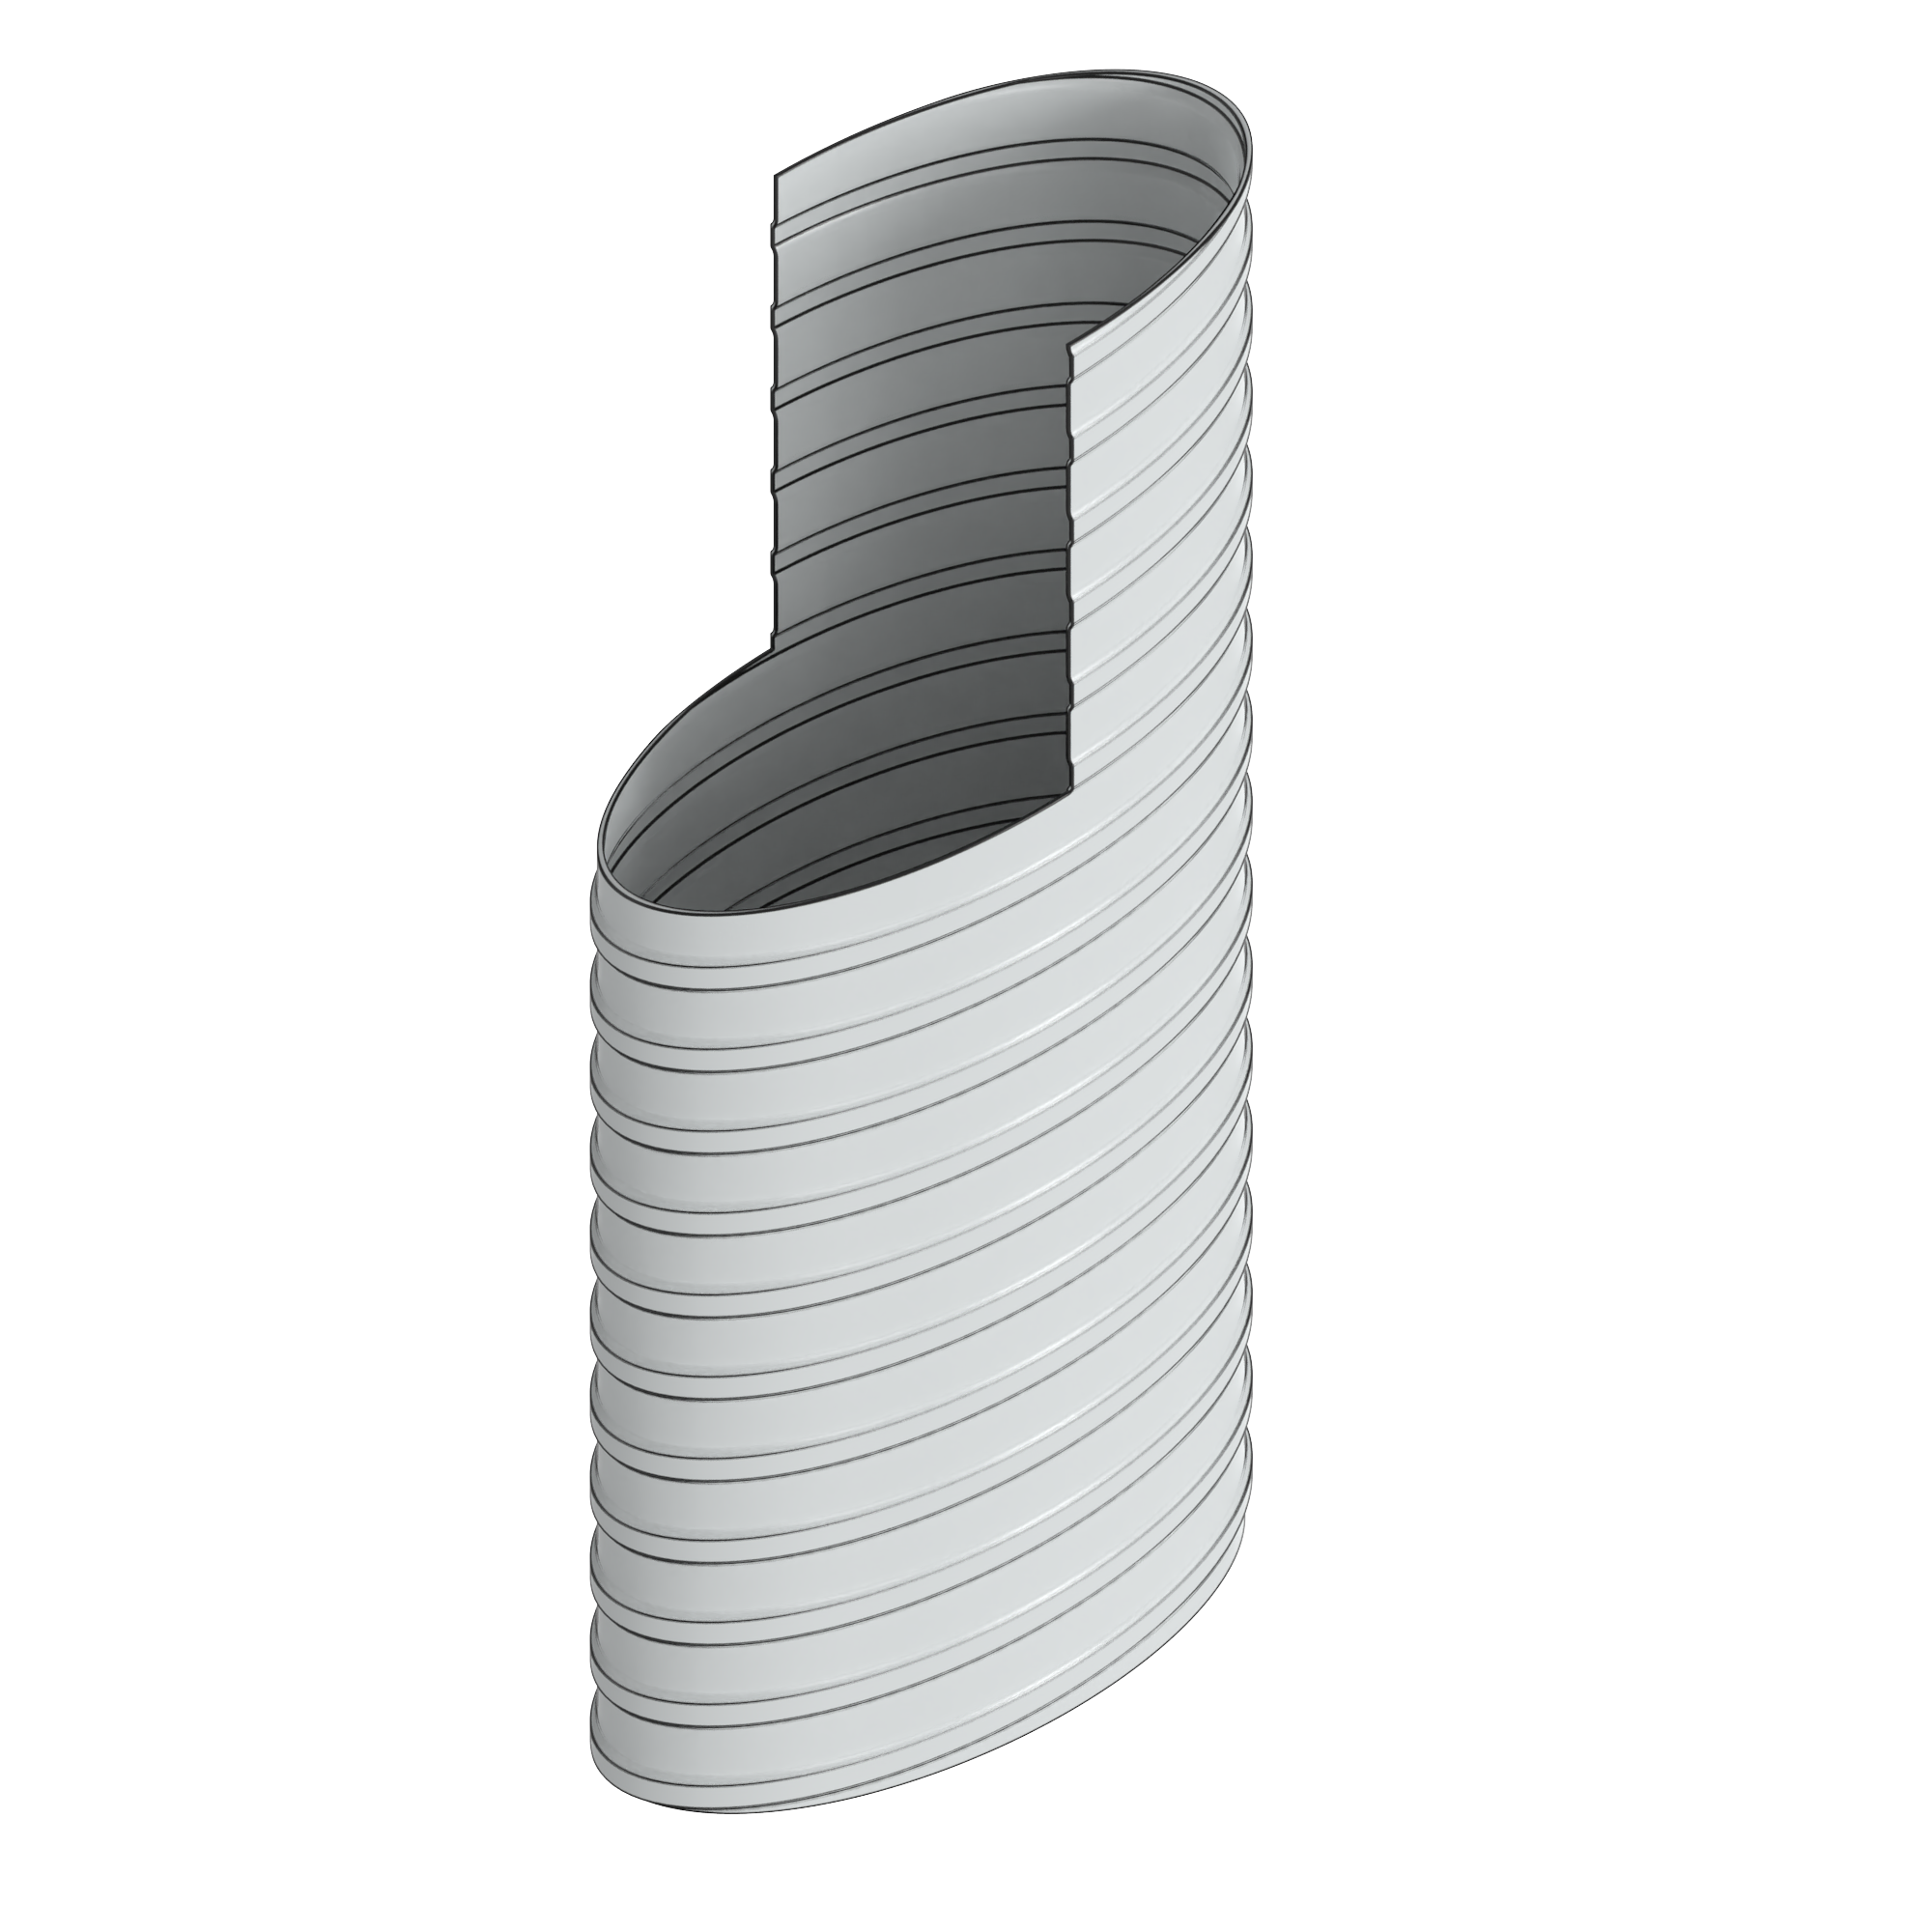 Well void oval tube 3D model